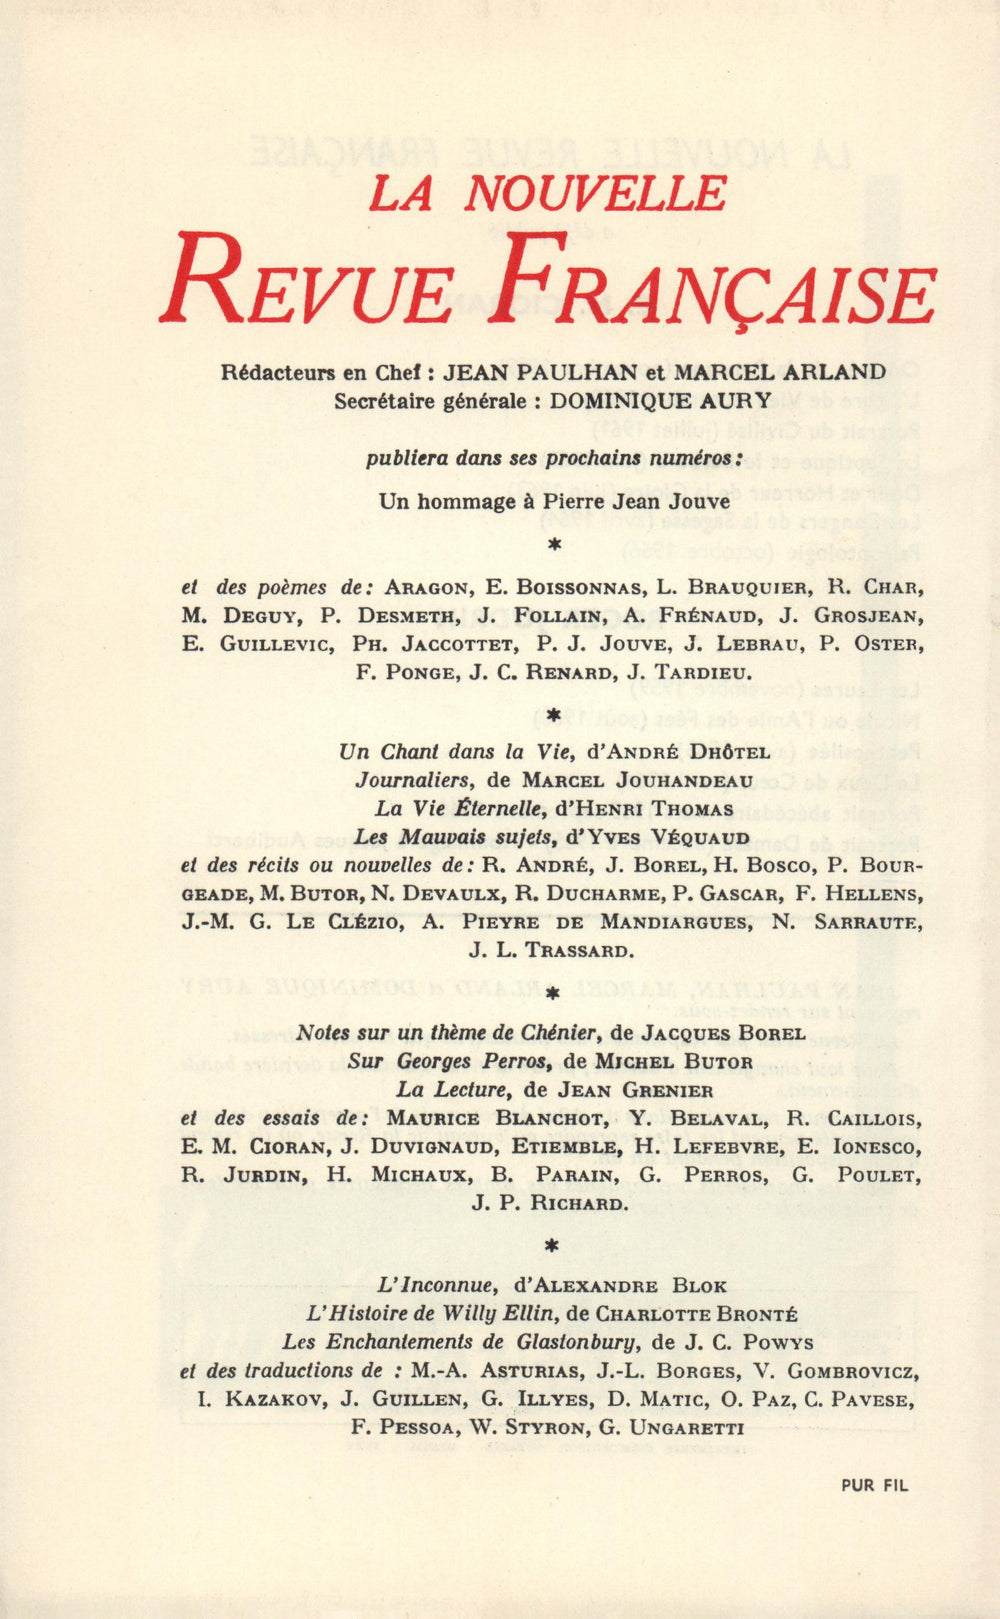 La Nouvelle Revue Française N' 181 (Janvier 1968)